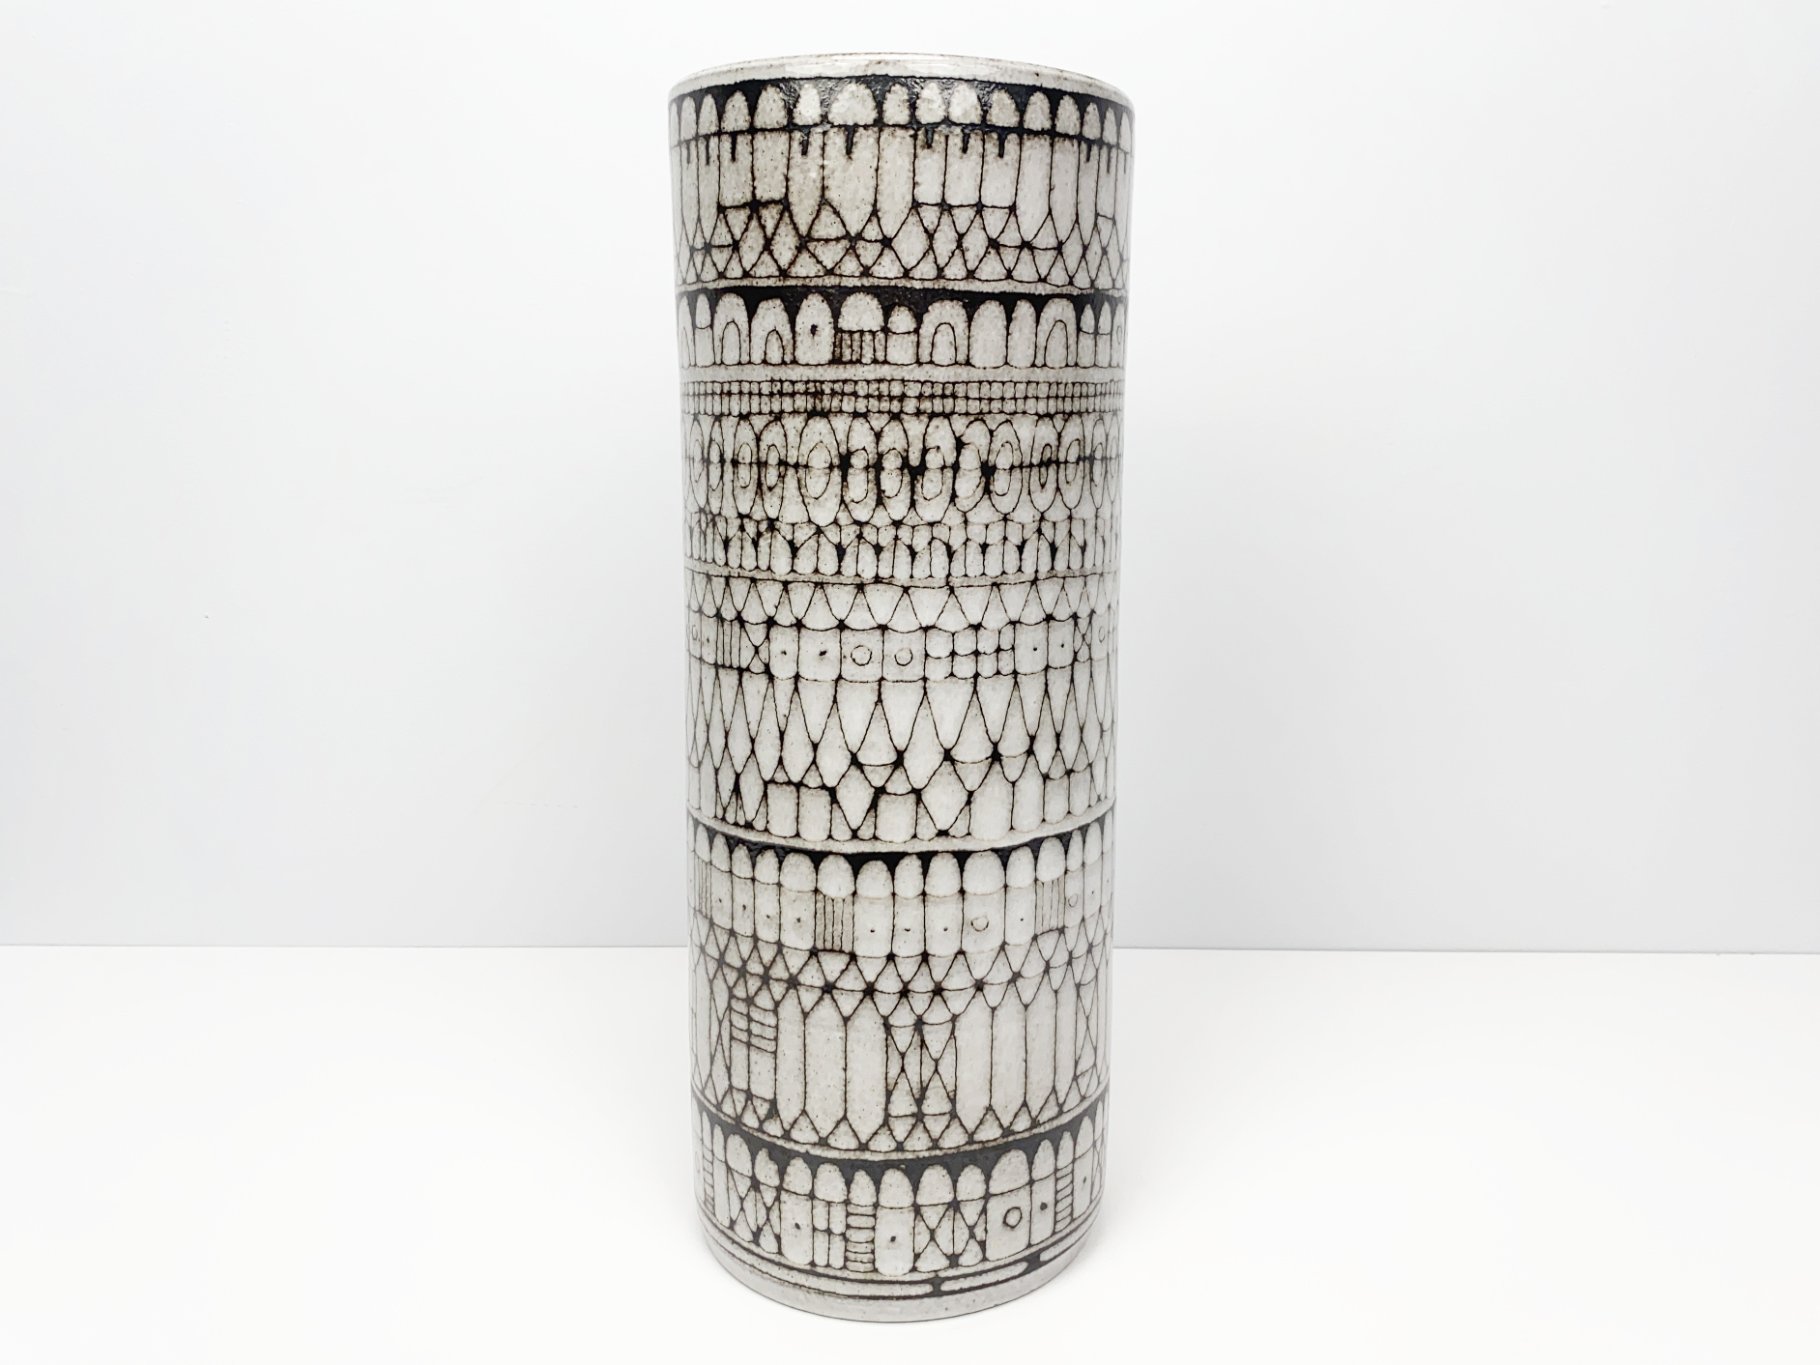 Grosse Vase, Keramik, Irdenware, Unikat, abstraktes Dekor, Sgraffittotechnik, von Wilhelm & Elly Kuch, 1960er